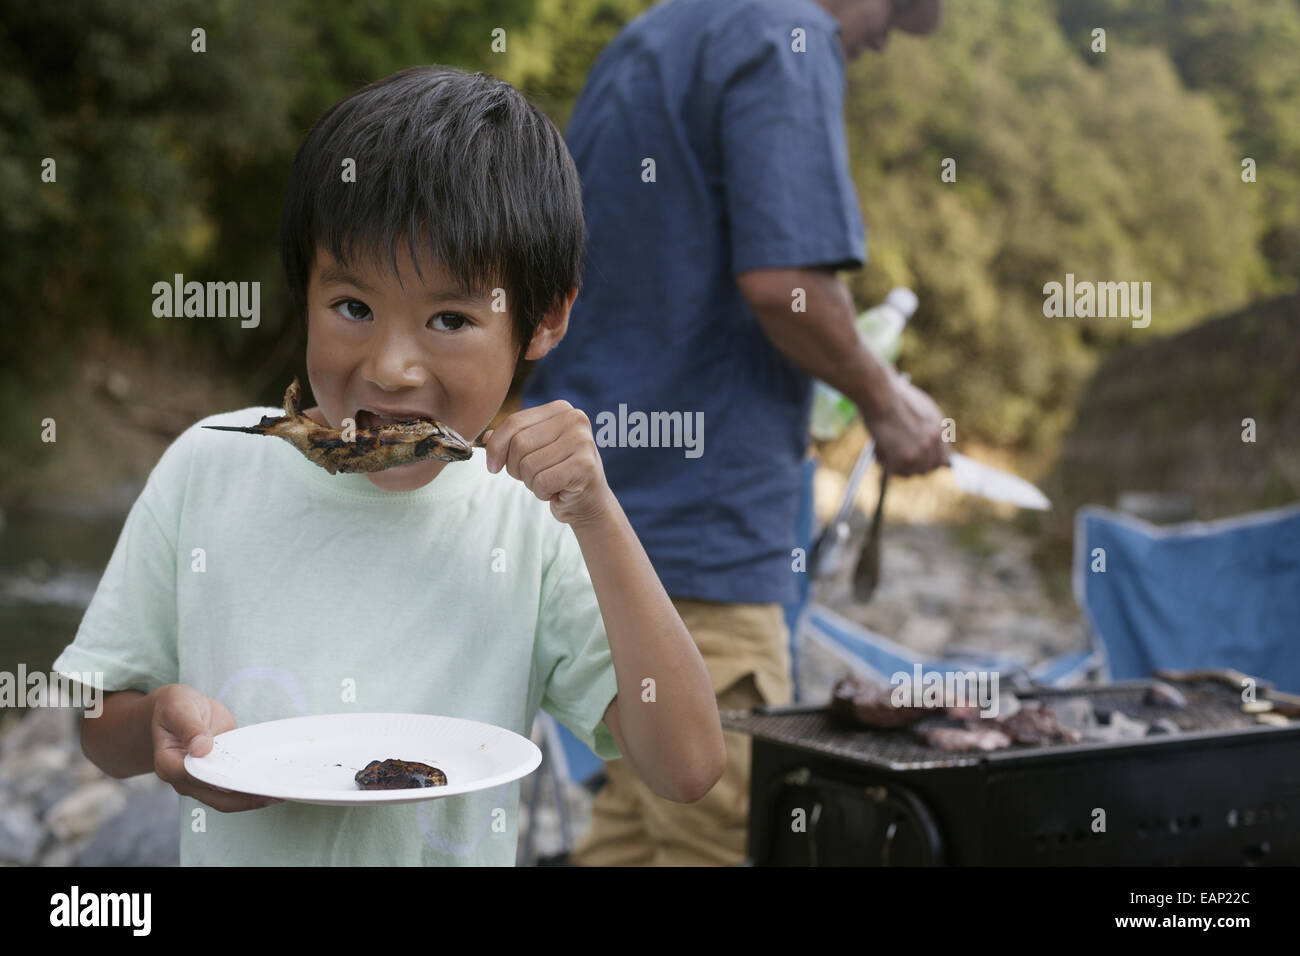 Kleiner Junge einen gegrillten Fisch zu essen, bei einem Picknick. Stockfoto